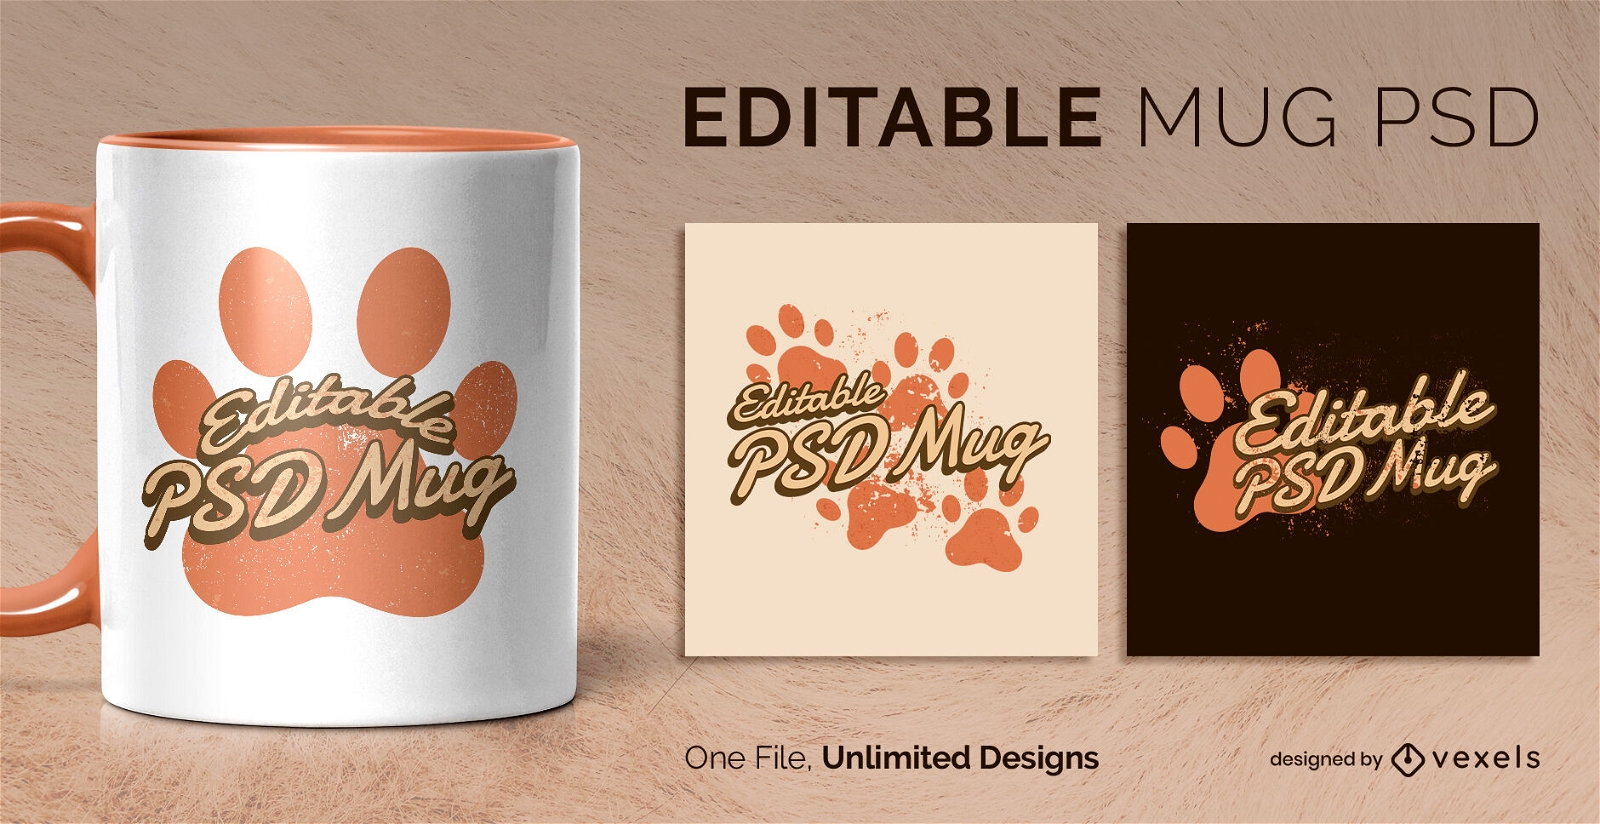 Dog paws scalable mug design